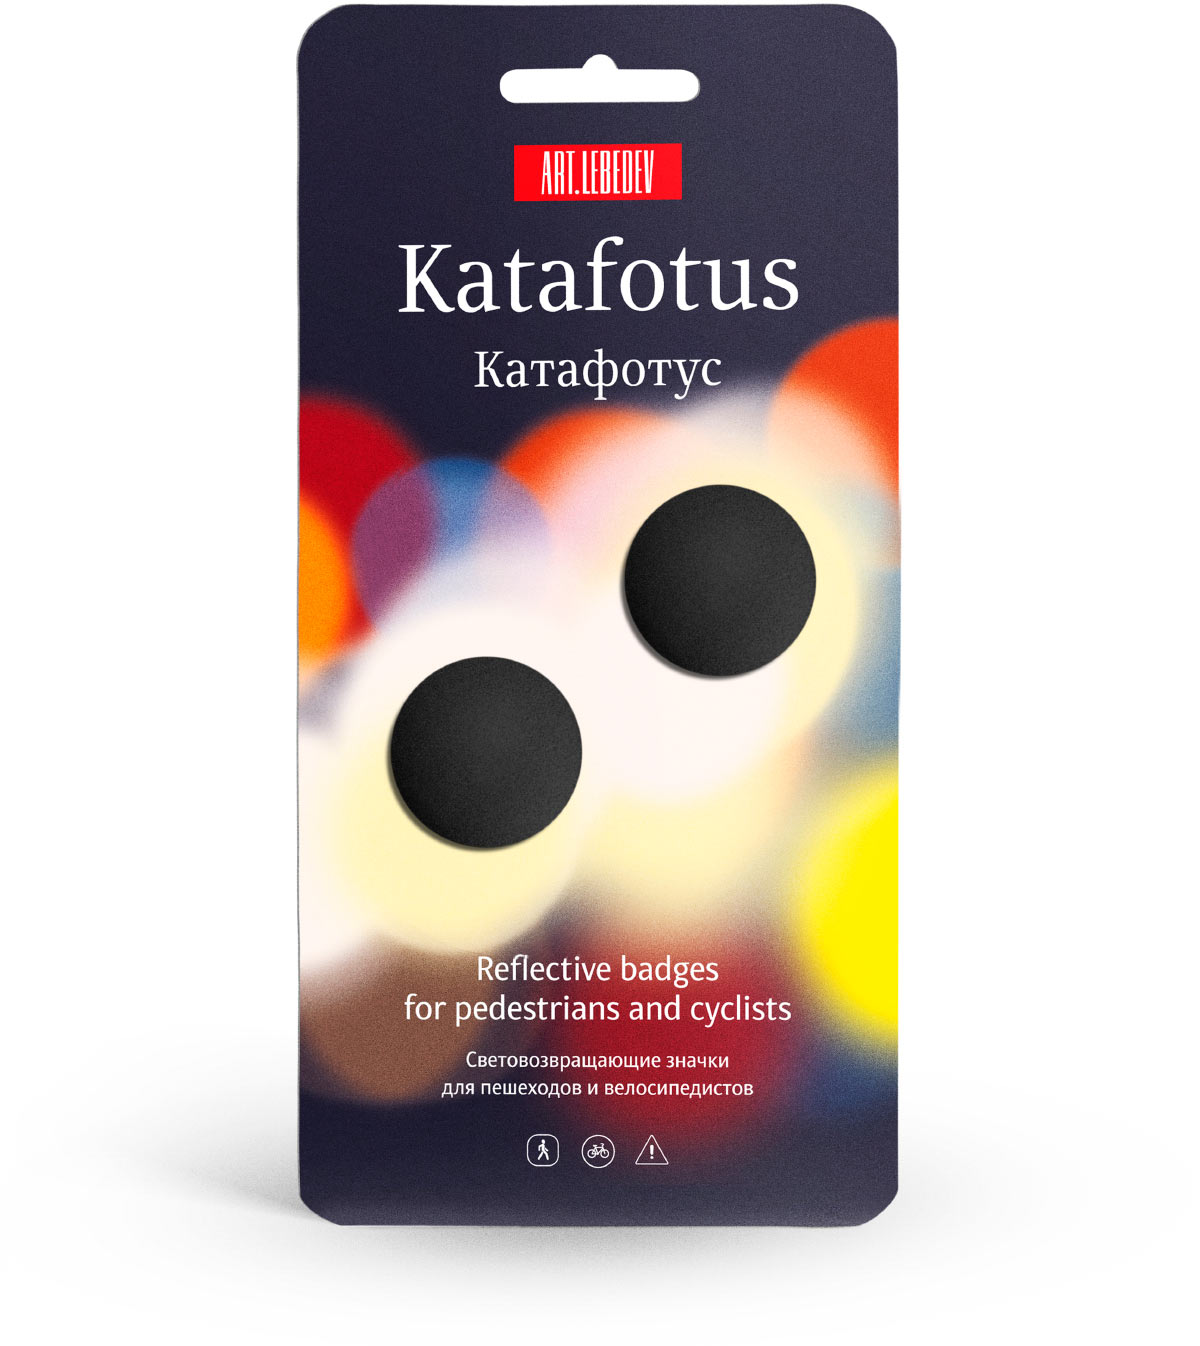 katafotus package 02